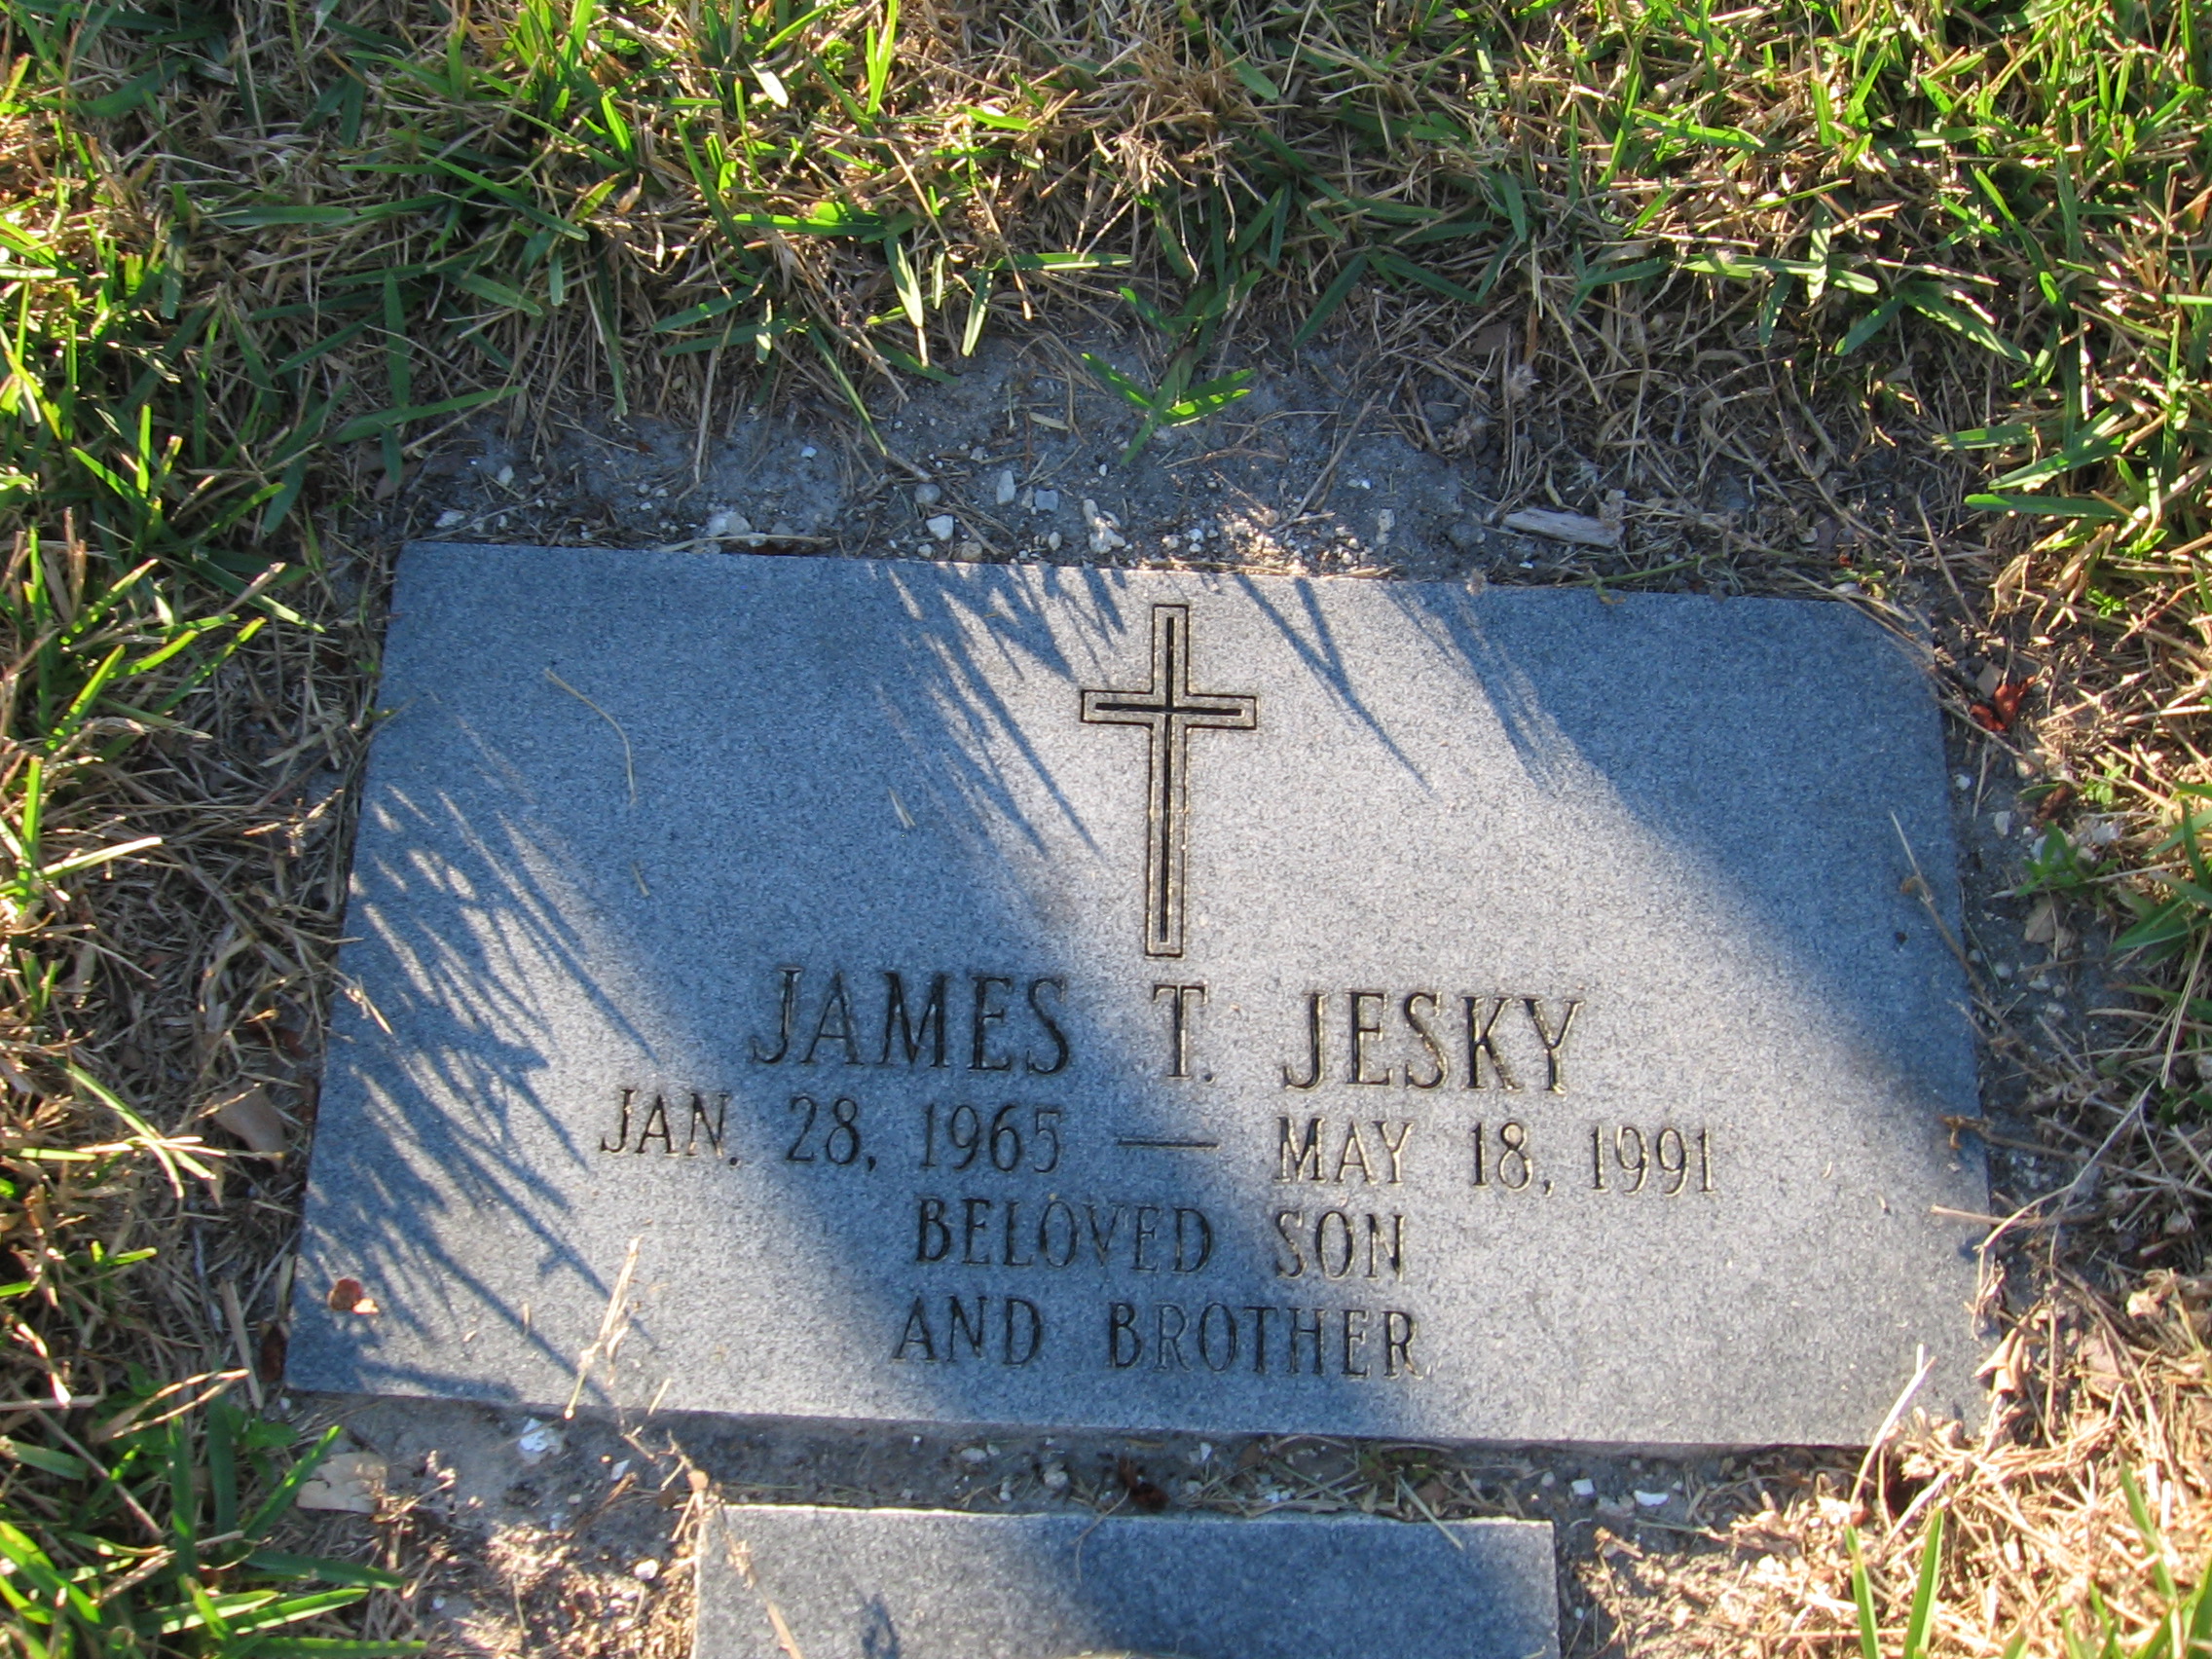 James T Jesky